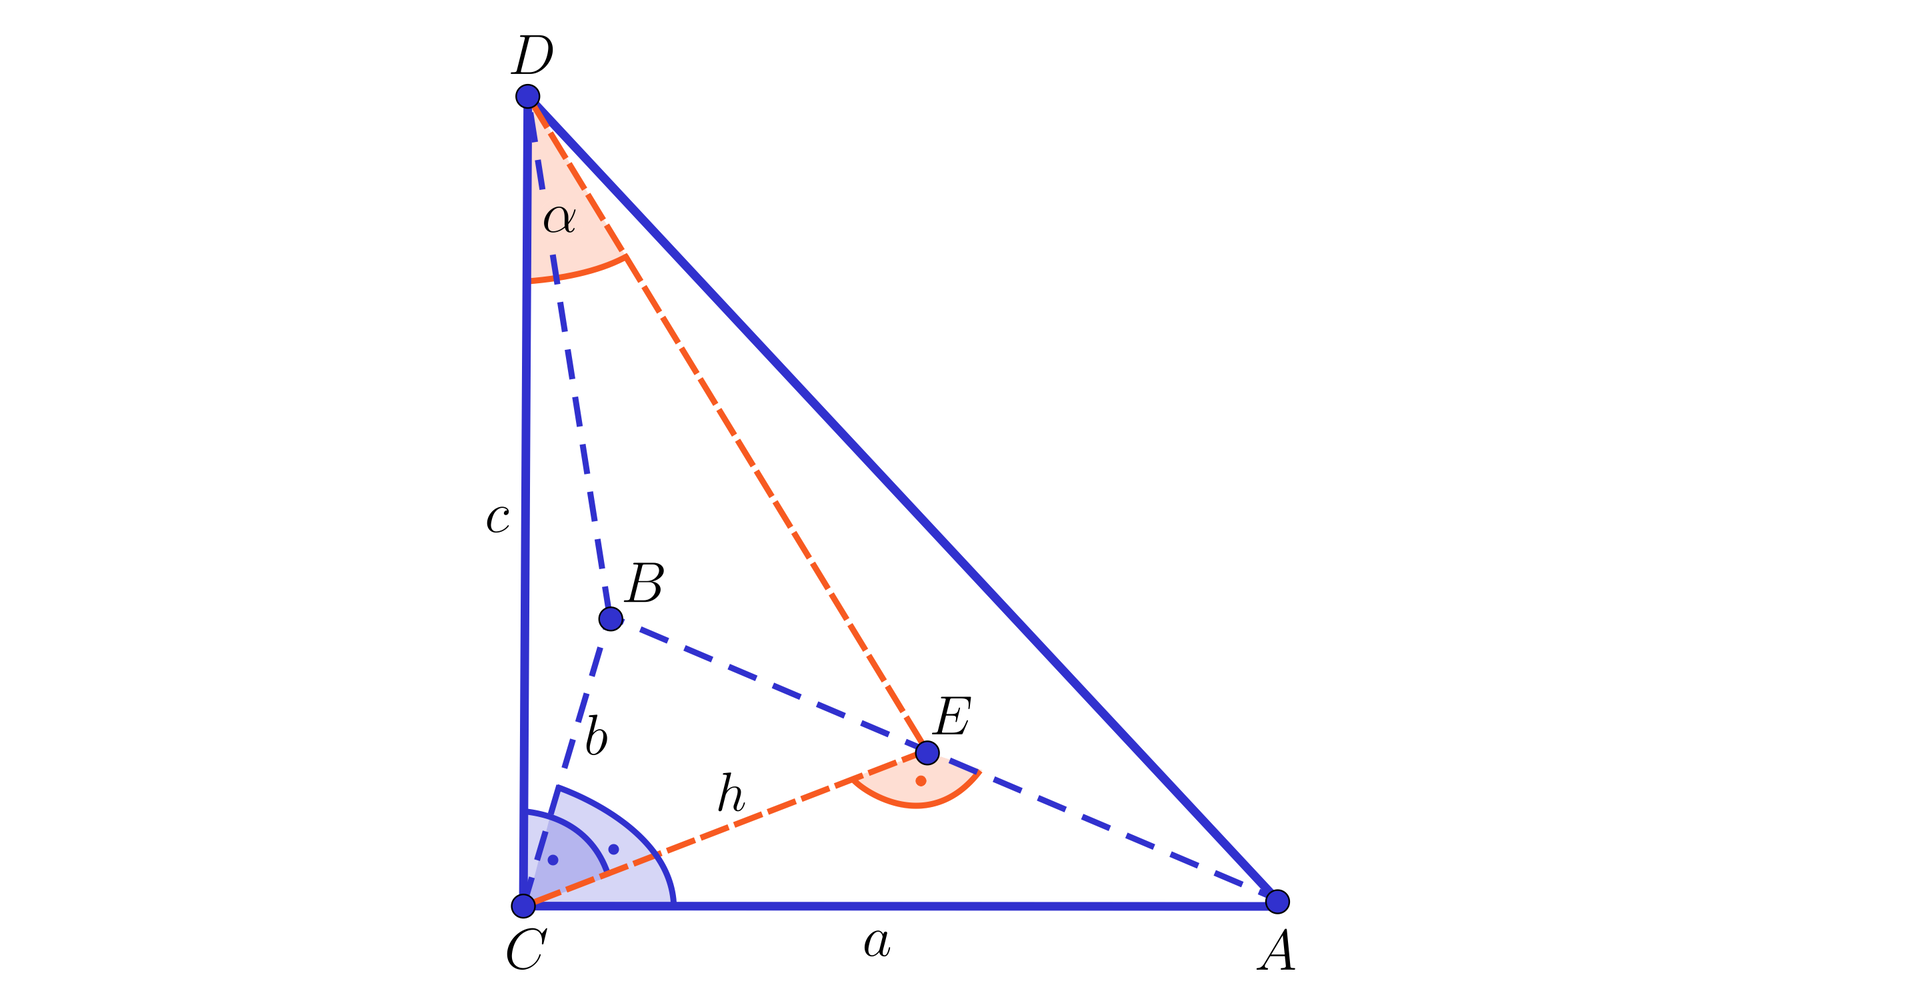 Ilustracja przedstawia czworościan o wierzchołkach A B C D , w którym krawędź AC ma długość a, krawędź BC ma długość b oraz CD ma długość c. Kąty ACD oraz ACB są kątami prostymi. Z wierzchołka C poprowadzono wysokość h na krawędź AC, jej spodek podpisano literą E. Z wierzchołka D poprowadzono odcinek do punktu E, kąt EDC ma miarę alfa.